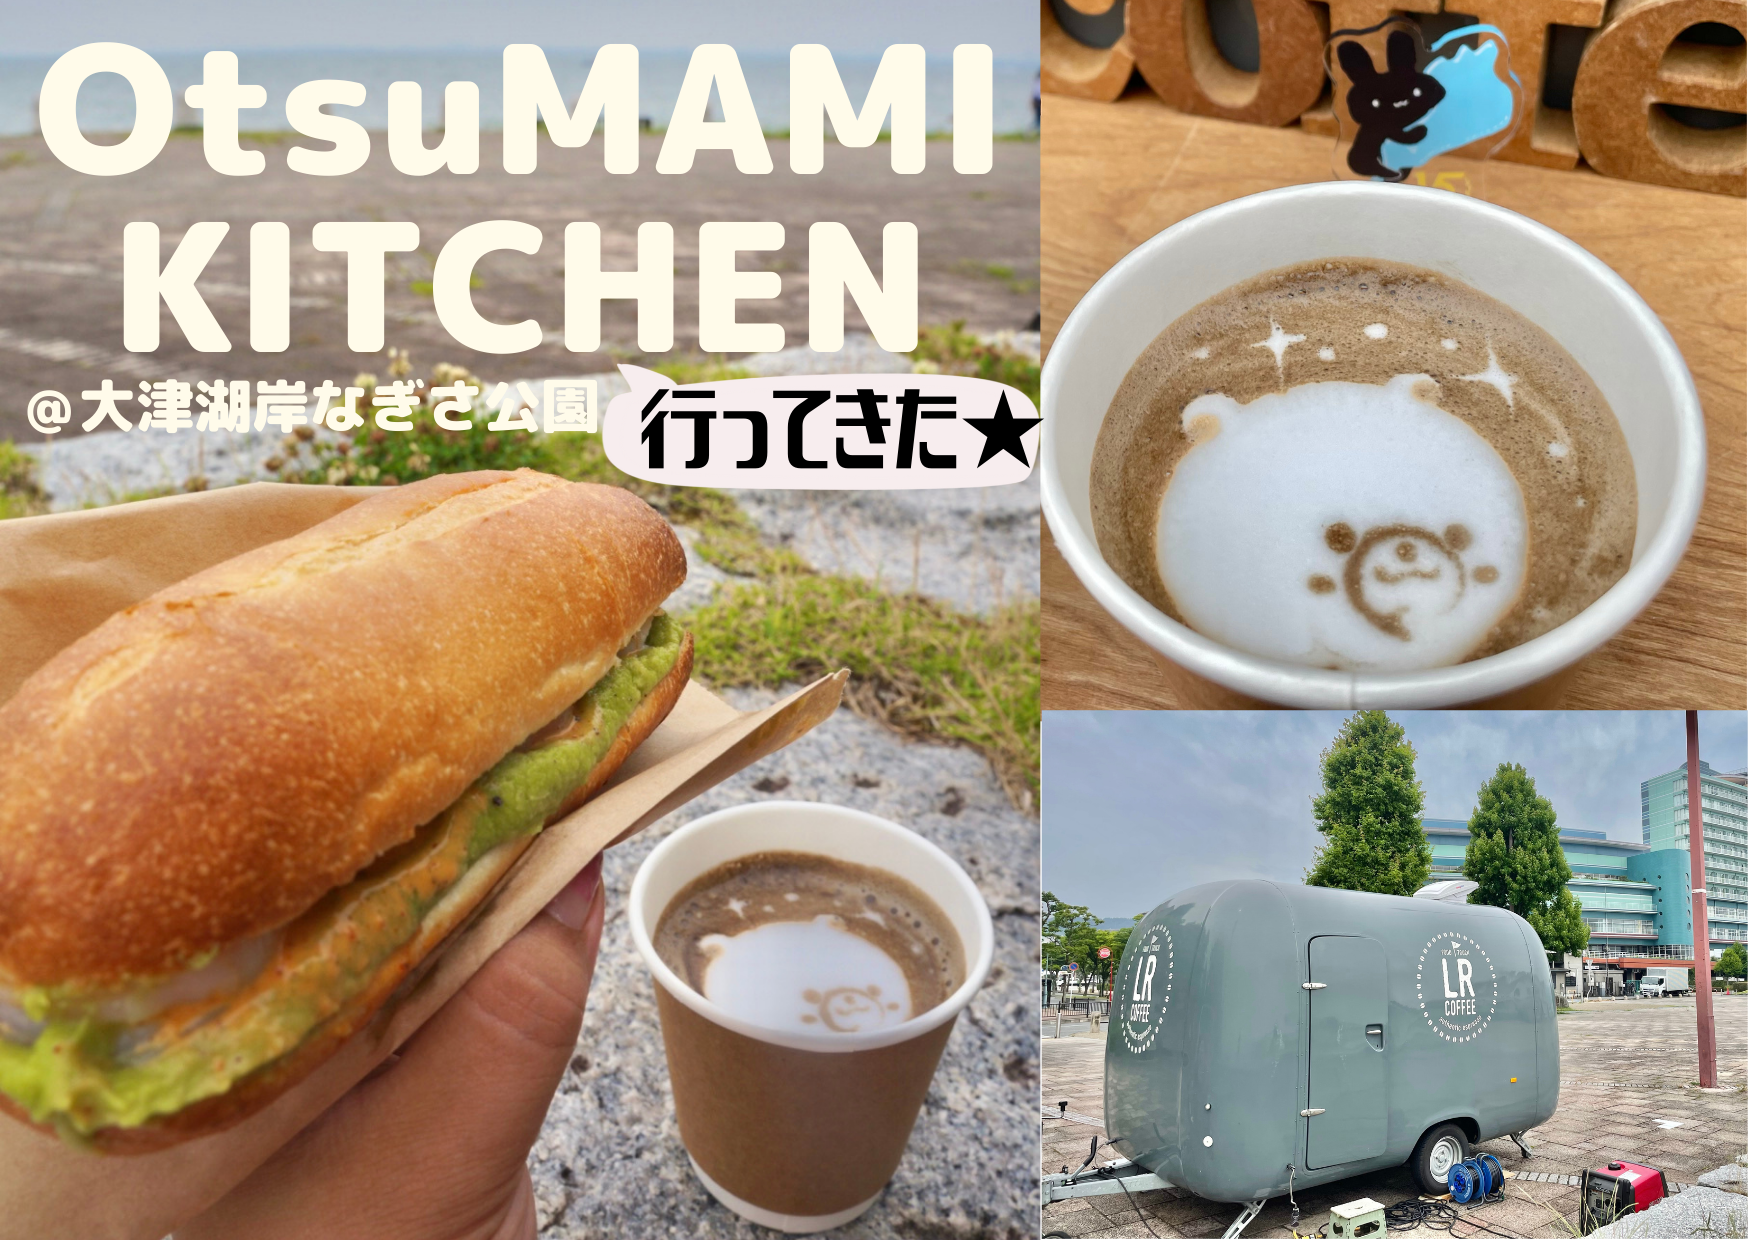 【OtsuMAMI KITCHEN】LR coffeeのキッチンカーグルメを味わってきました♪【大津湖岸なぎさ公園】絶好のロケーションでフードトラックグルメを満喫【～10/31】